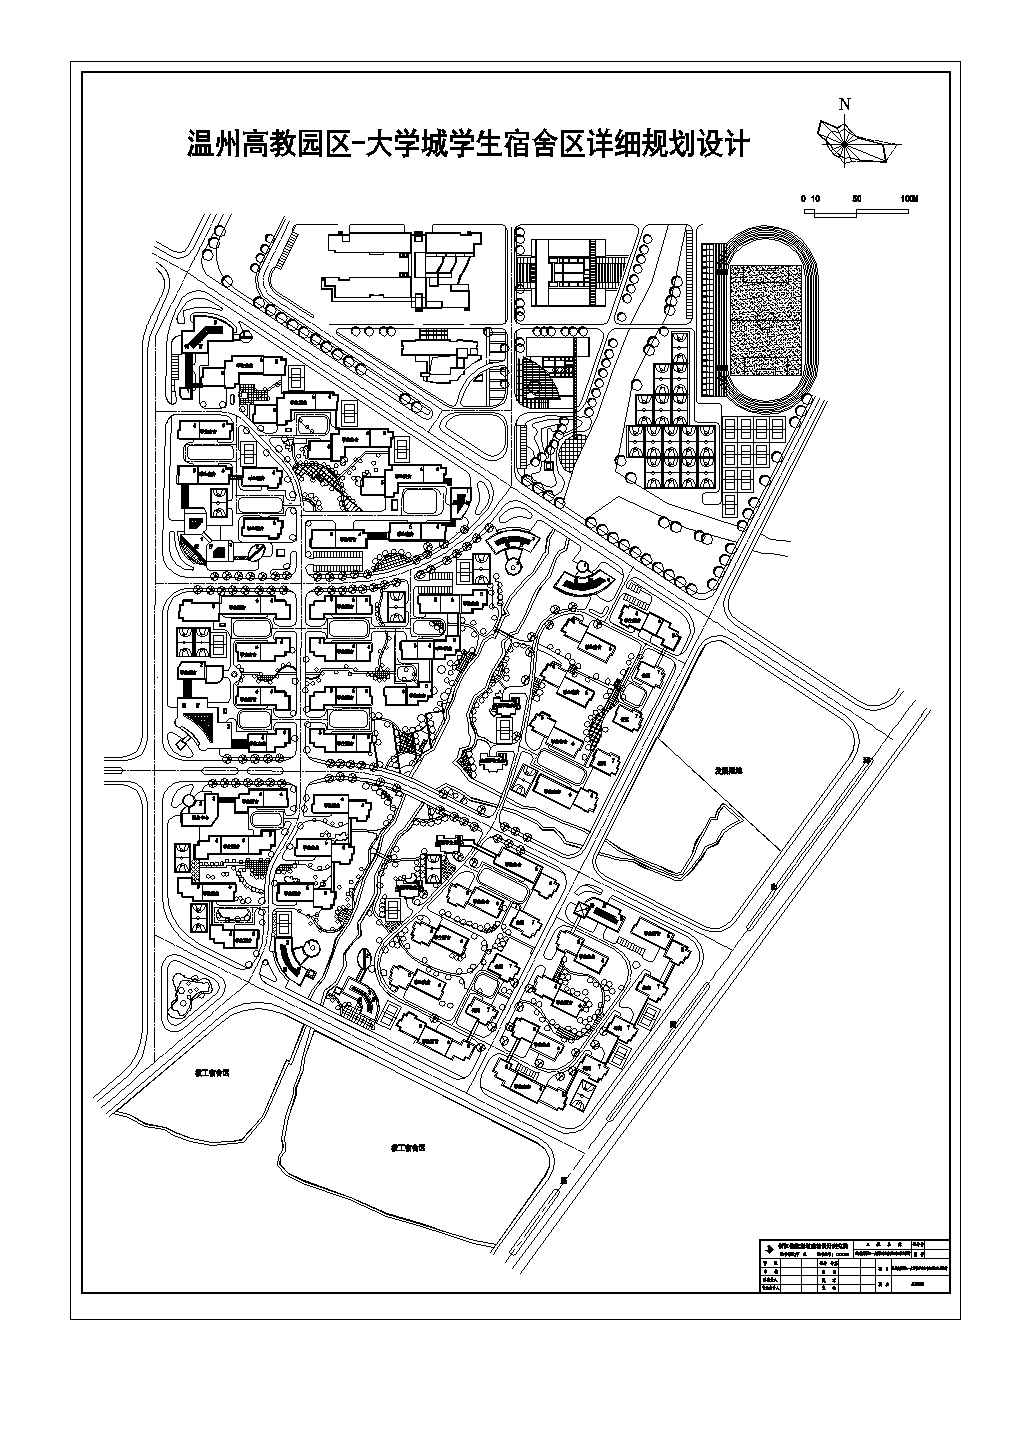 高教园区大学城学生宿舍区详细规划设计CAD图纸